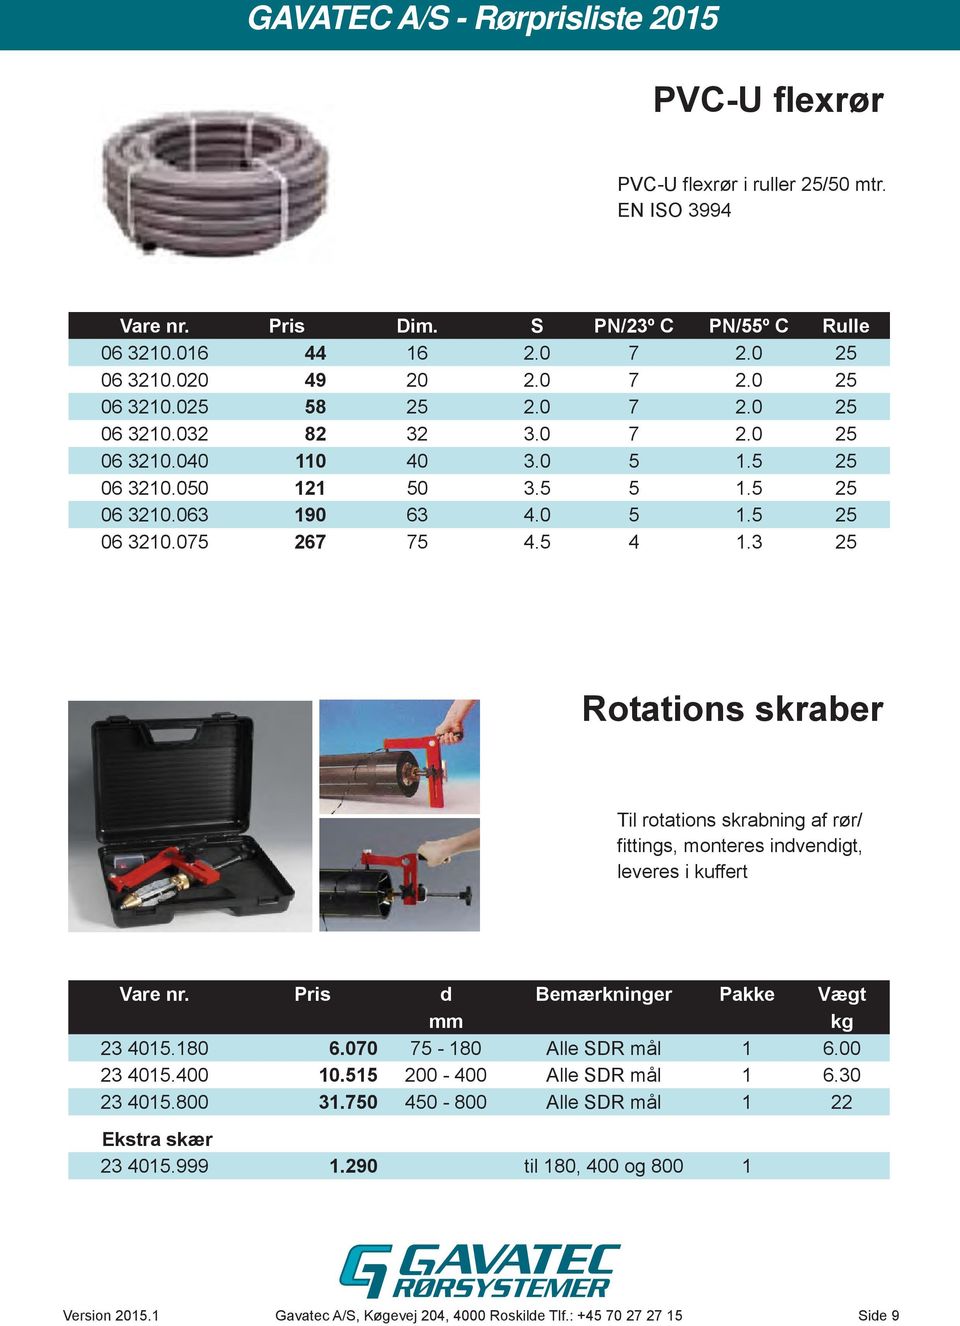 3 25 Rotations skraber Til rotations skrabning af rør/ fittings, monteres indvendigt, leveres i kuffert Vare nr. Pris d Bemærkninger Pakke Vægt mm kg 23 4015.180 6.070 75-180 Alle SDR mål 1 6.